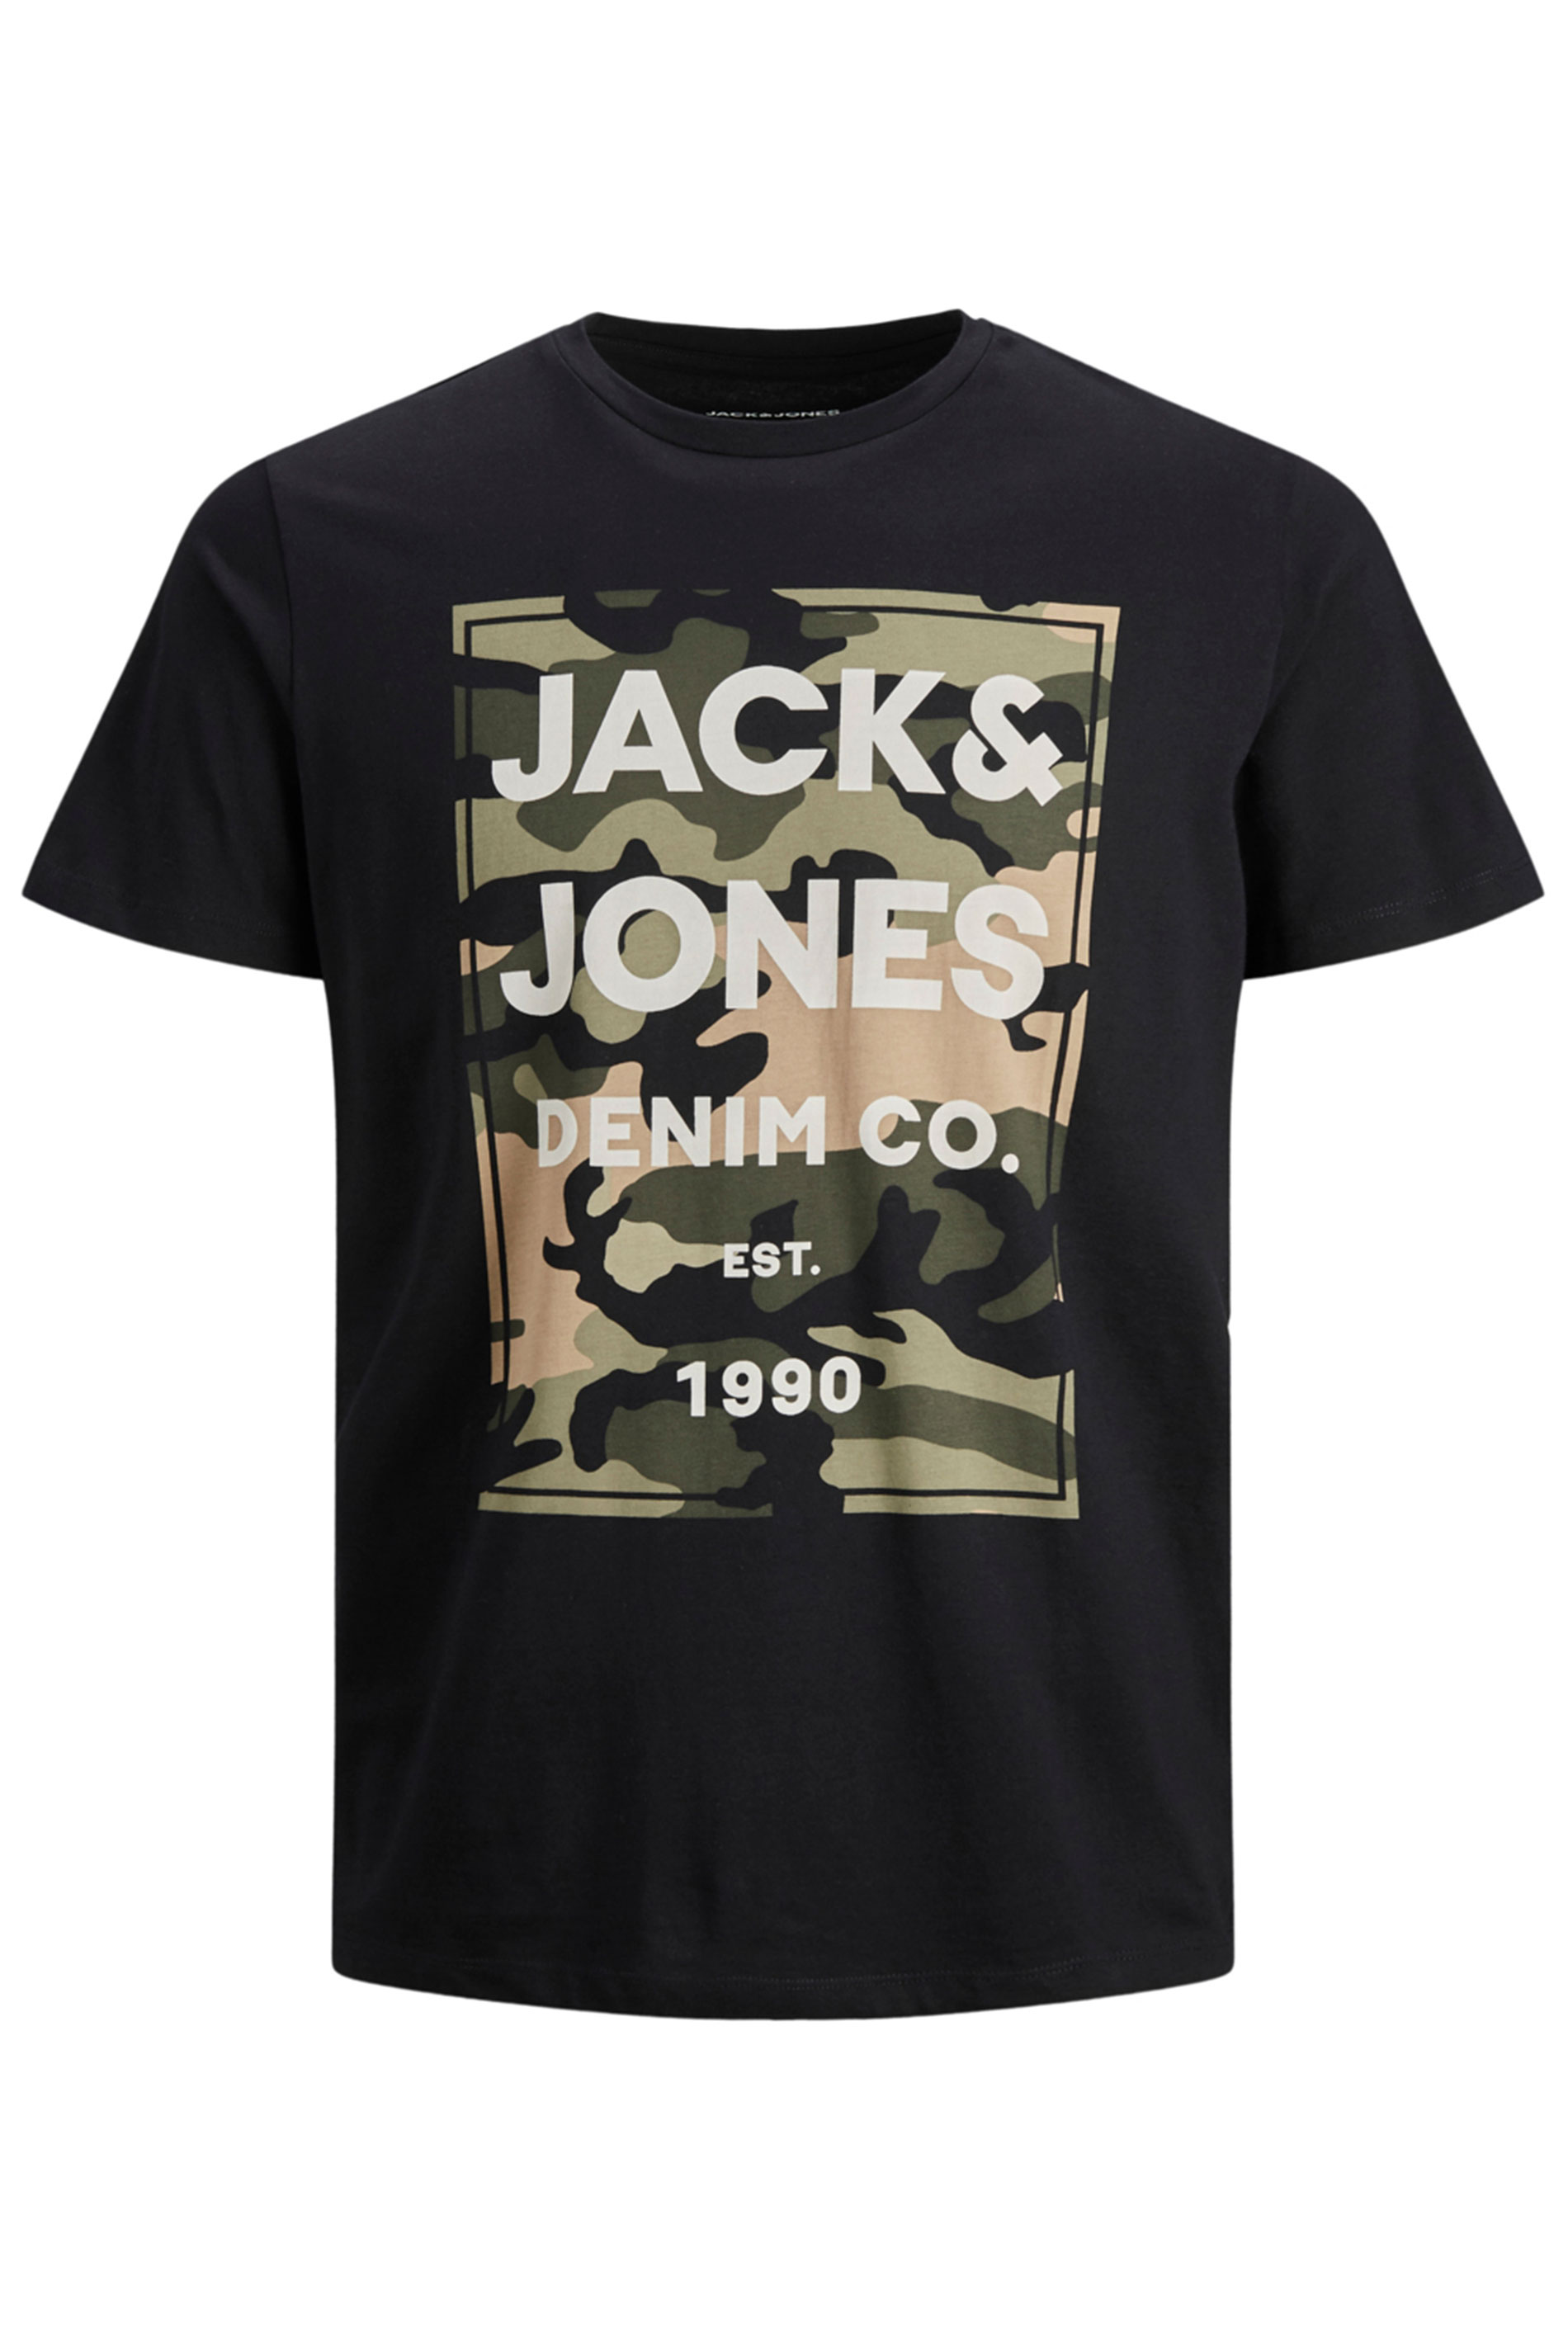 JACK & JONES Black Camo Graphic Print T-Shirt | BadRhino